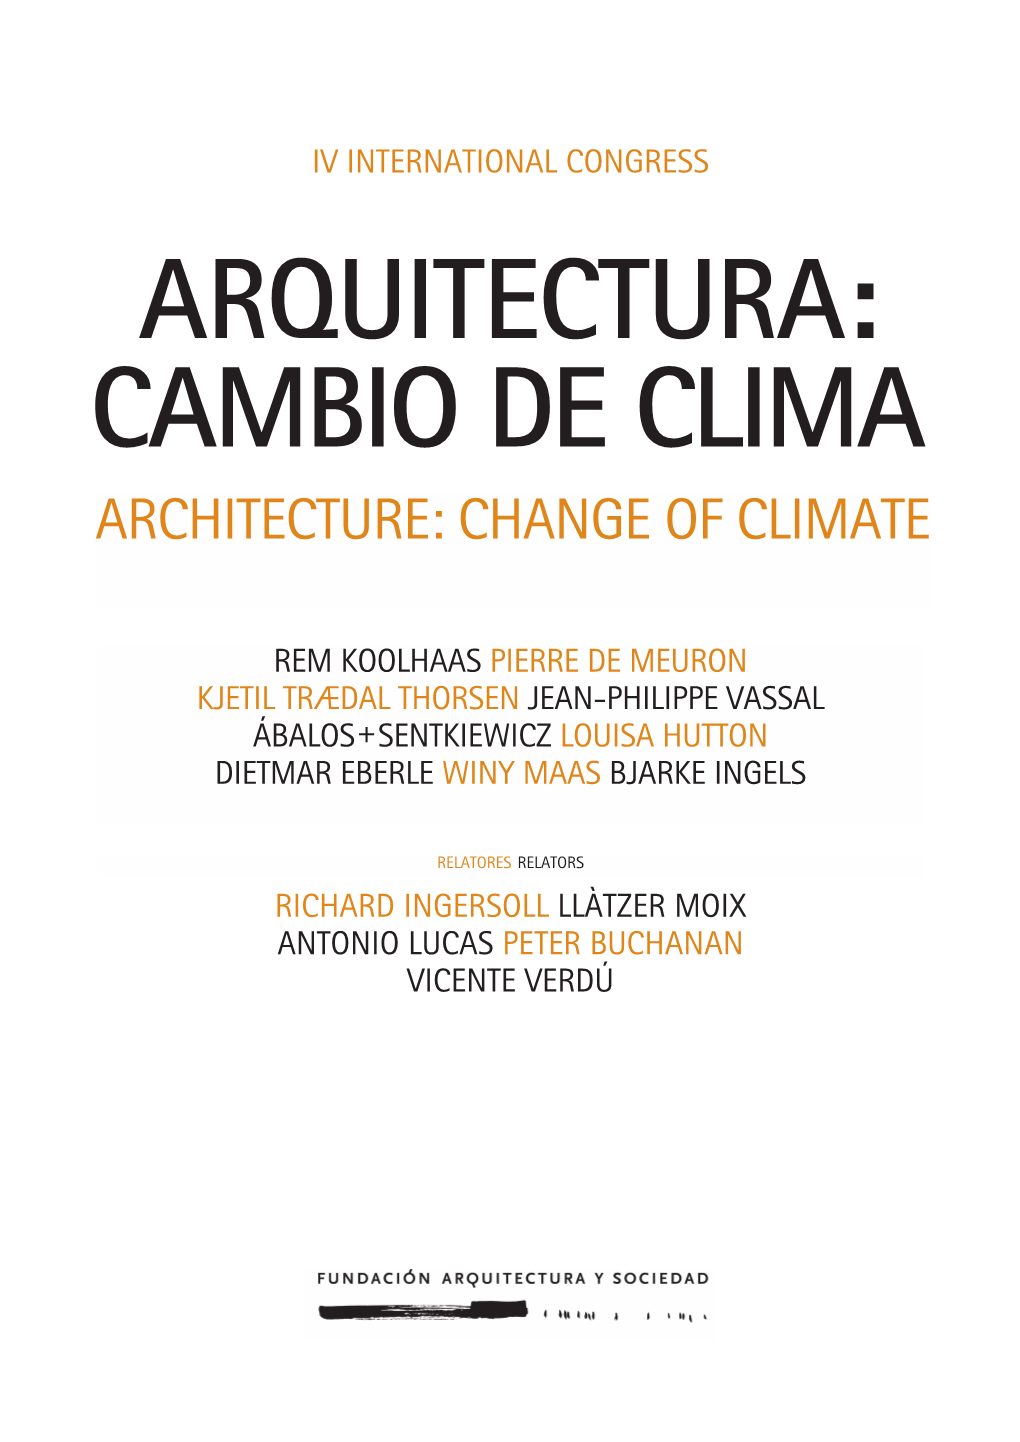 Dossier Arquitectura Cambio De Clima DEF.Indd